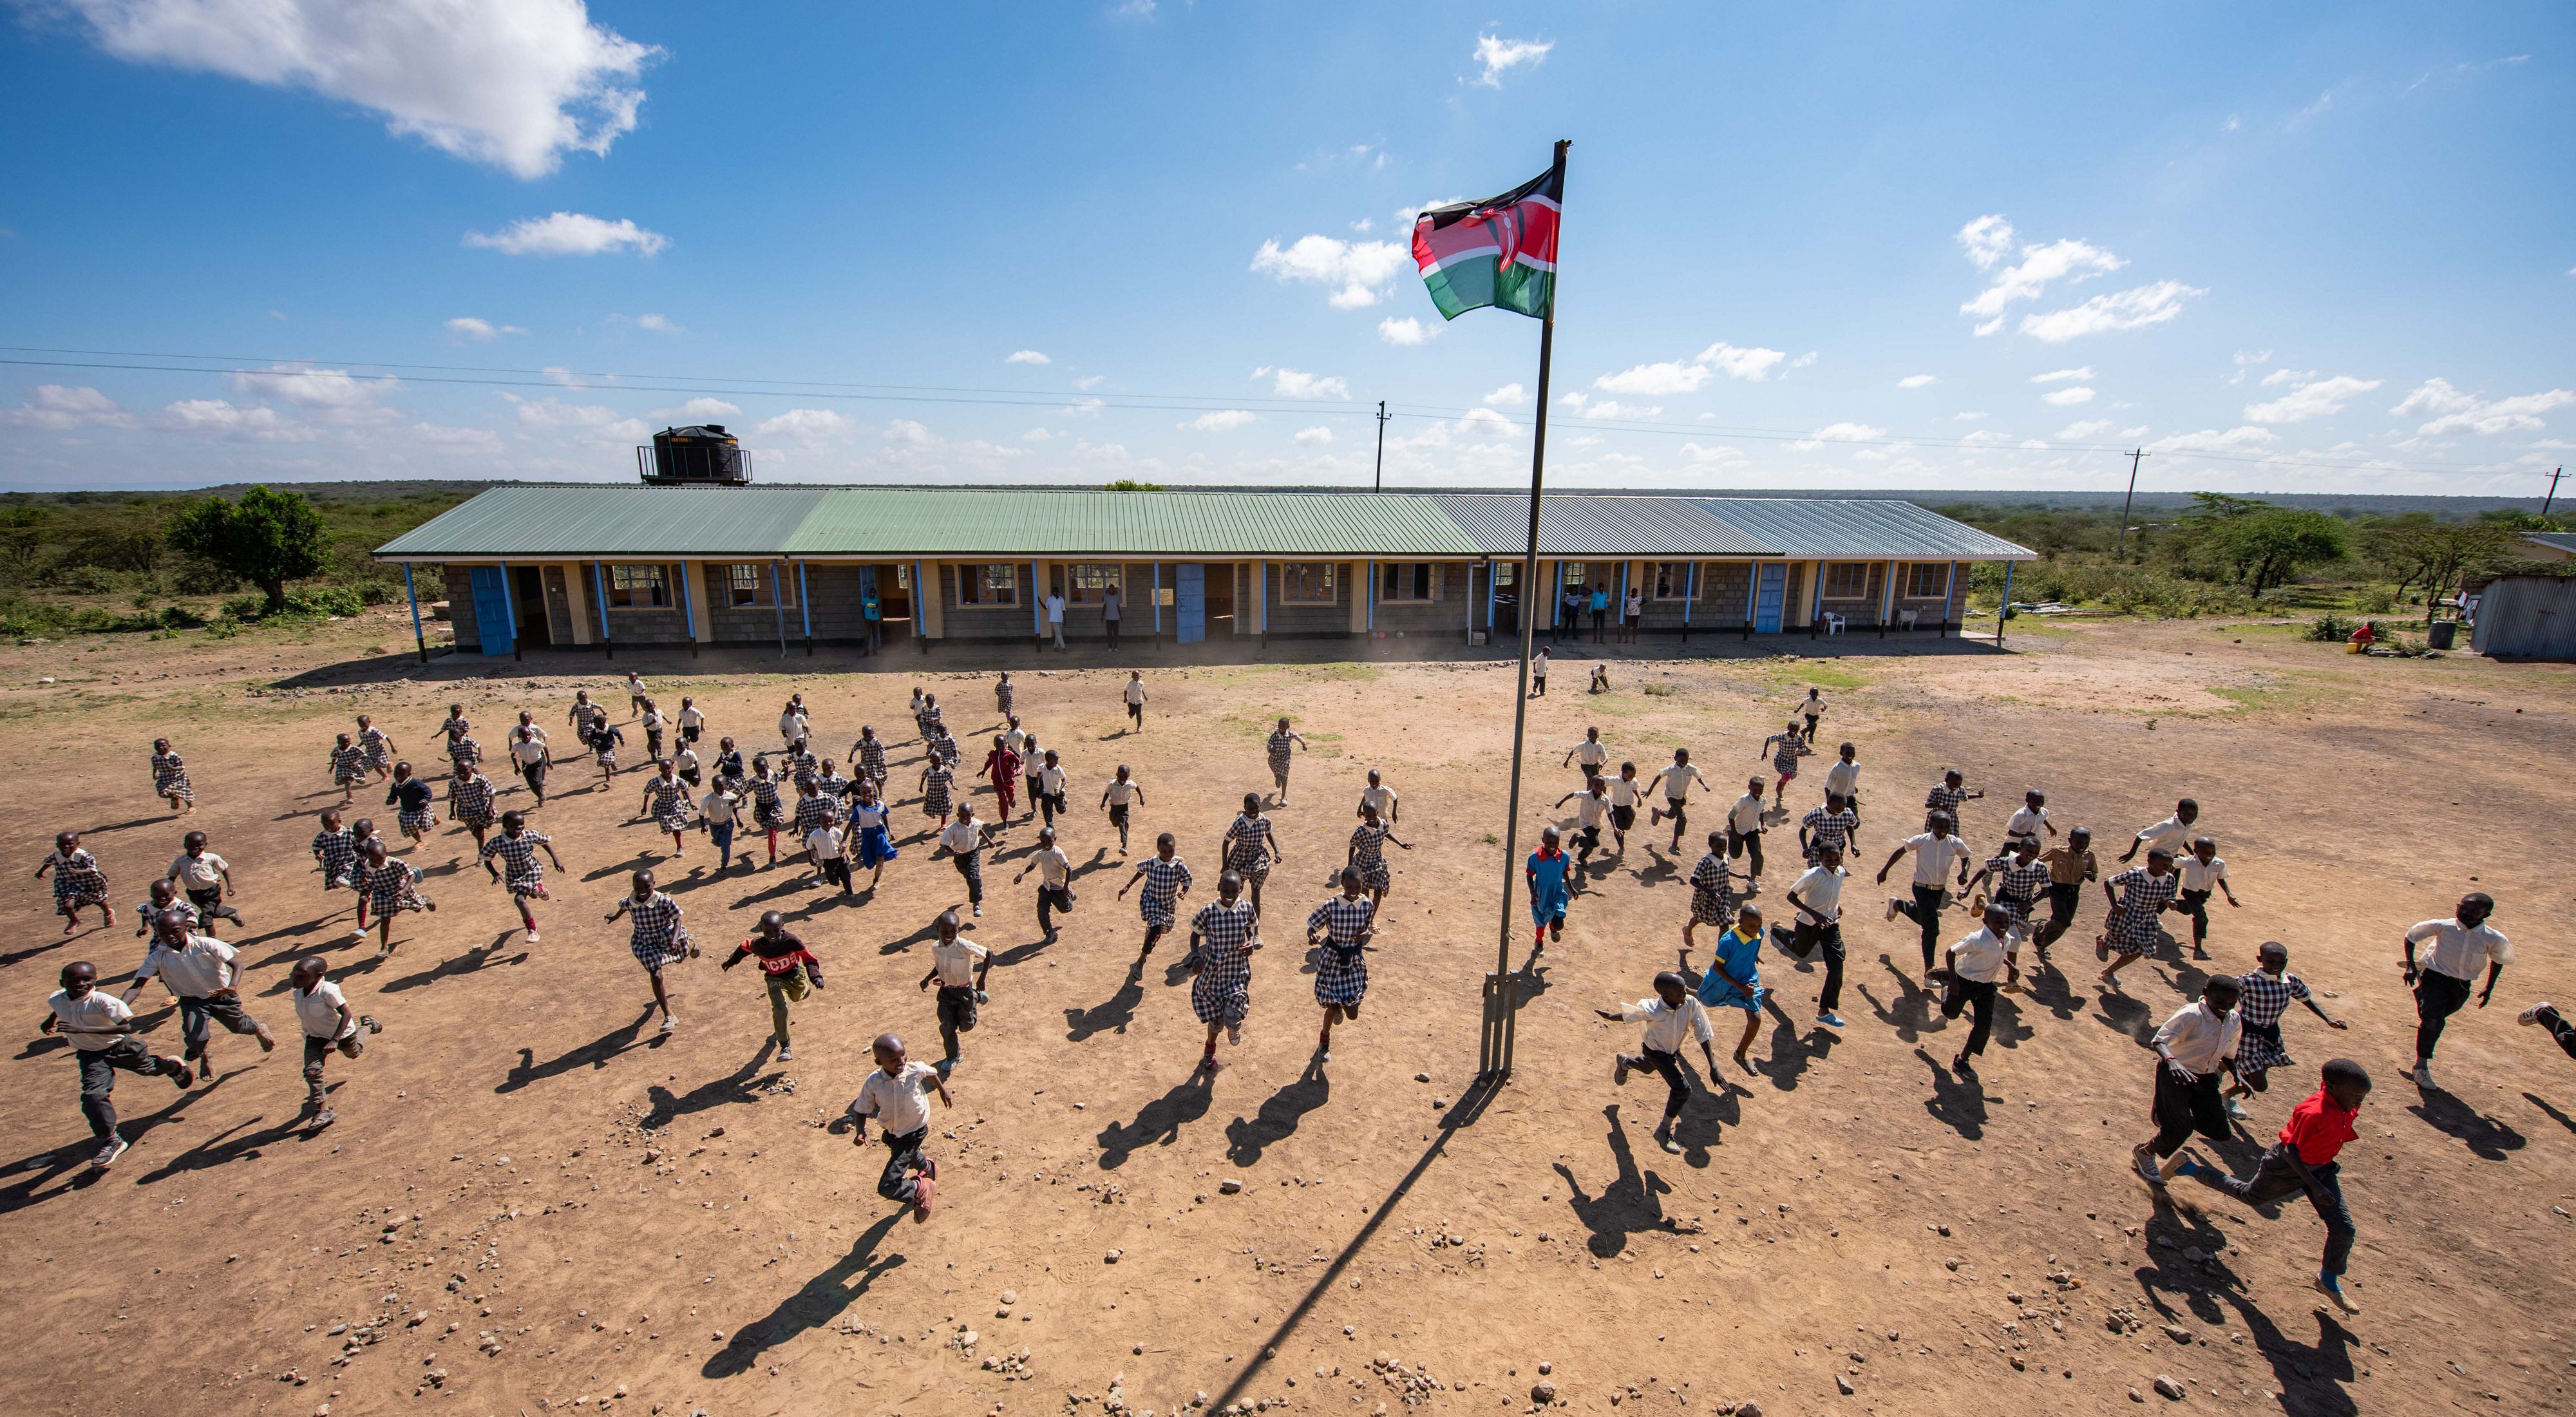 Dozens of children running through a dusty schoolyard